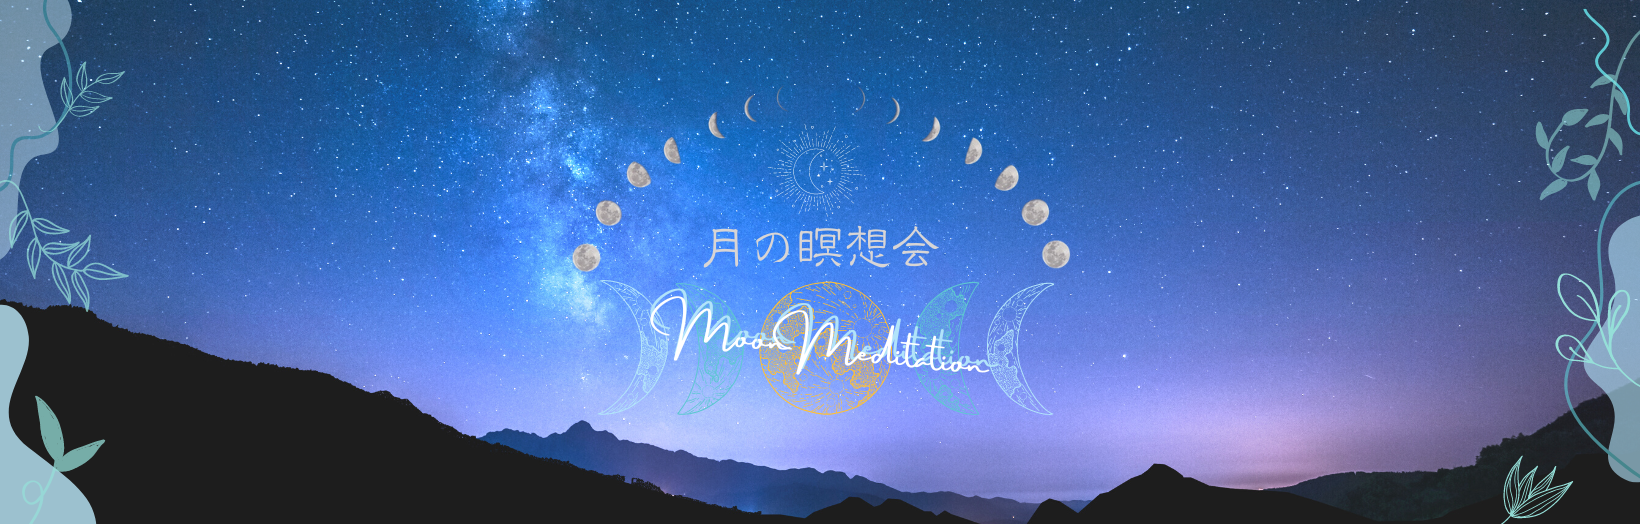 新月と満月の夜開催の、月の瞑想会